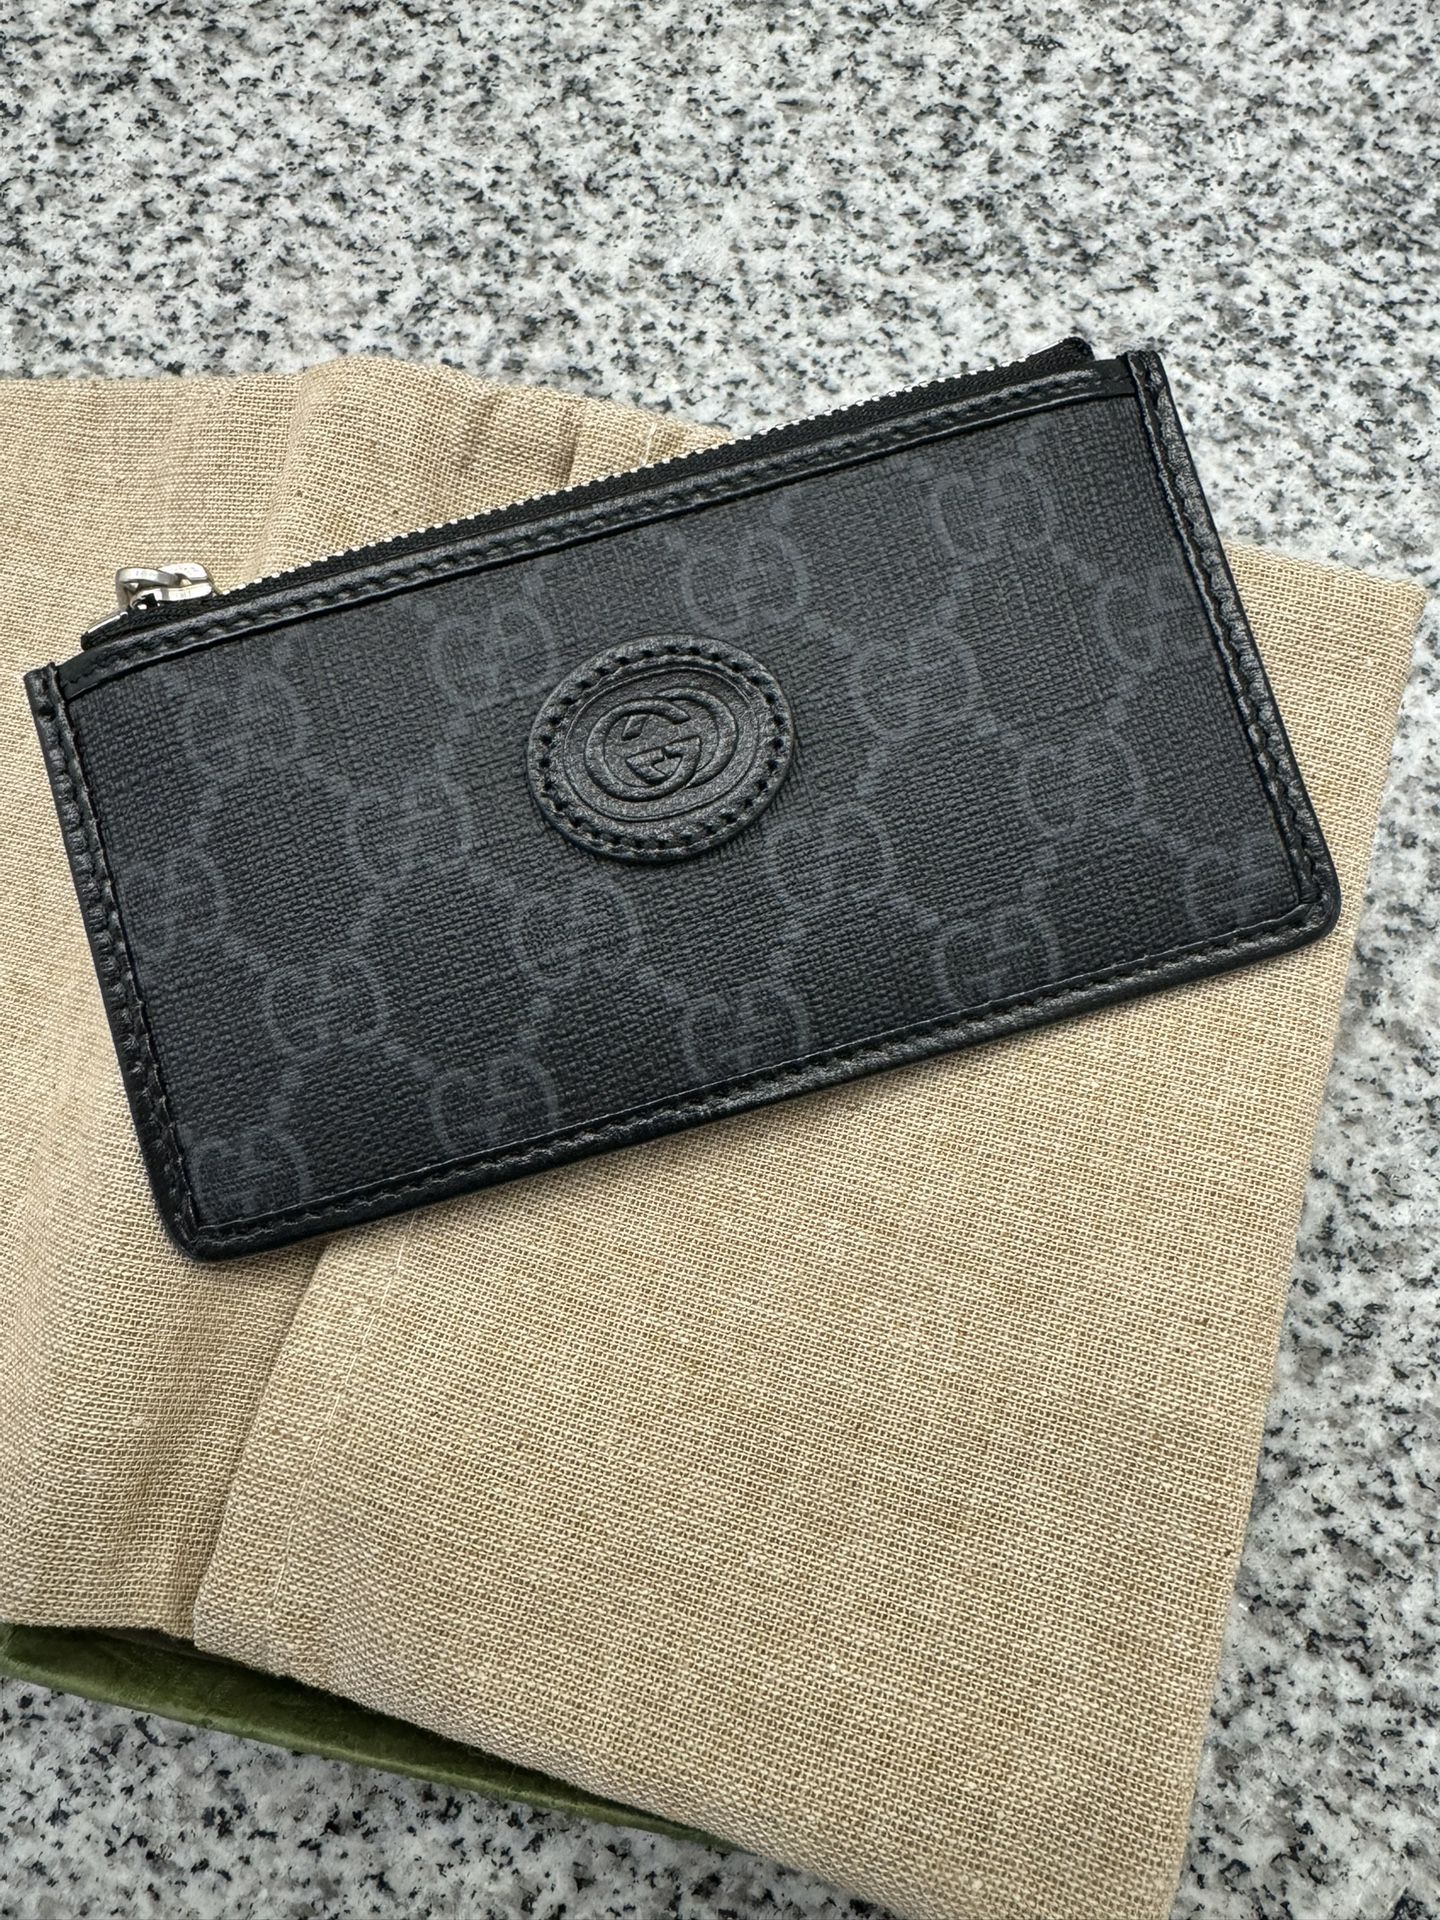 Gucci interlocking G Wallet 